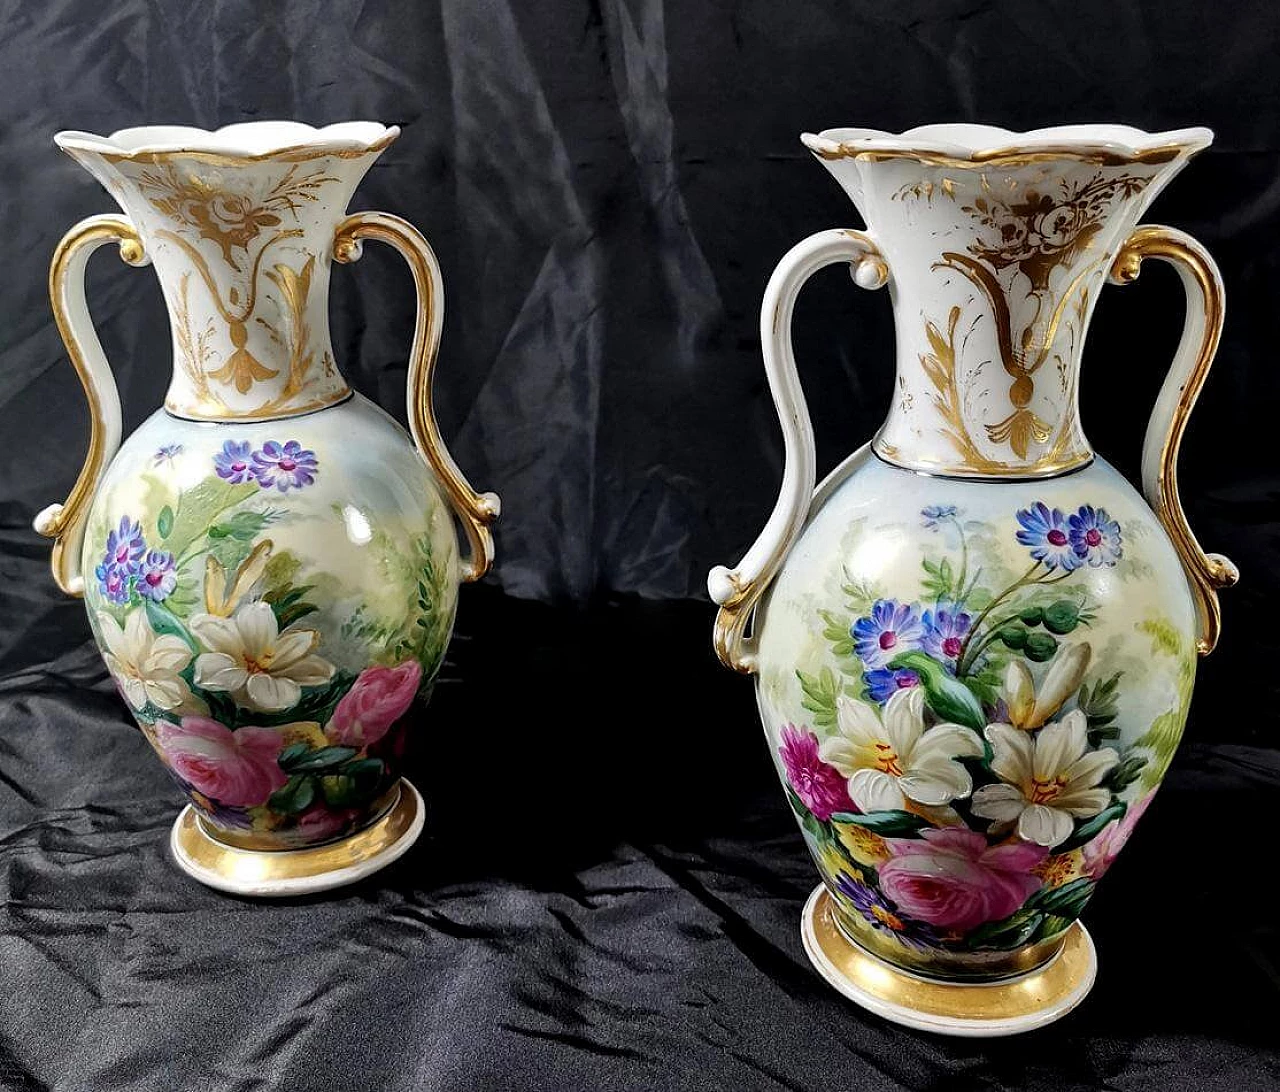 Pair of hand-painted De Paris porcelain vases, 19th century 1463934